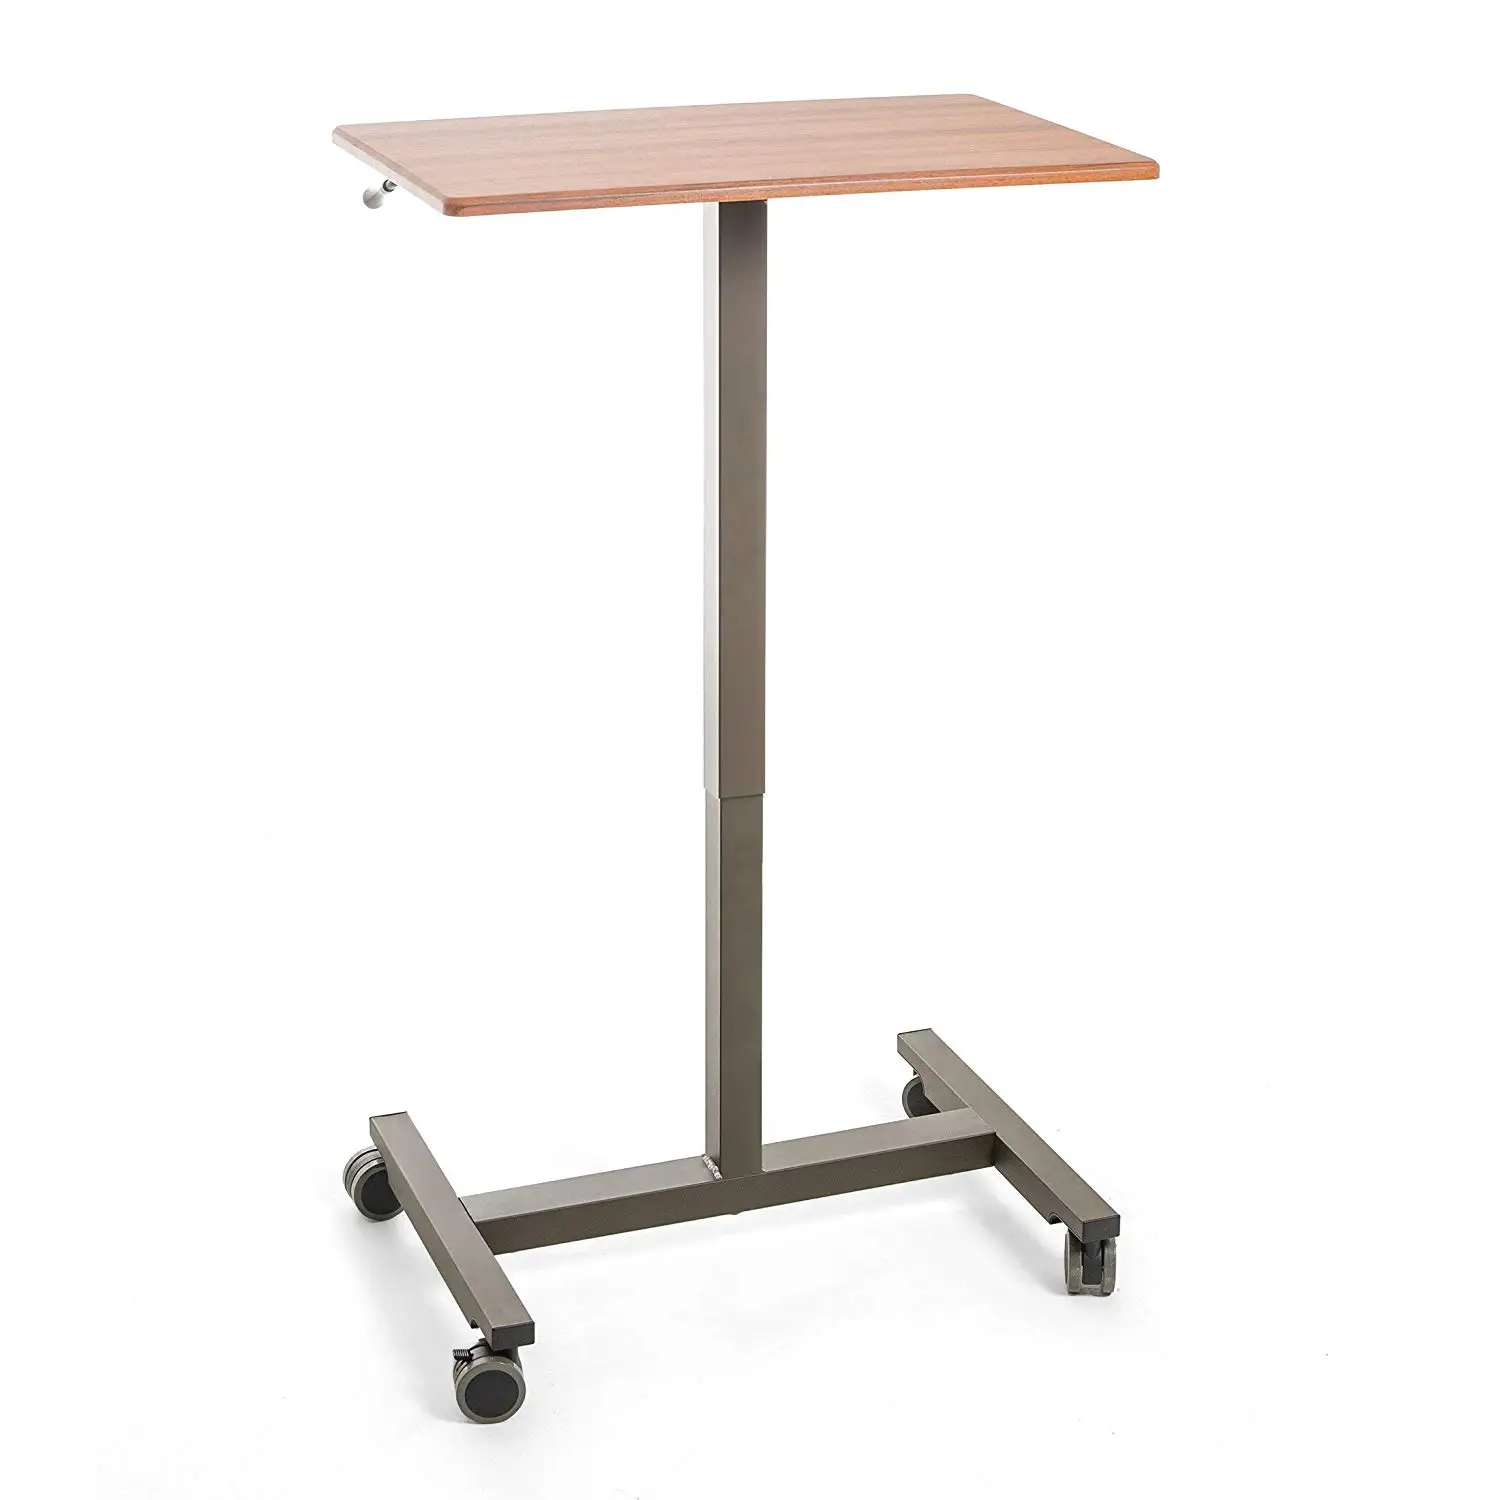 Стоячий столик. Стоячий стол. Стоячая парта. Стол для инженера стоячее. Столики для еды стоячие.